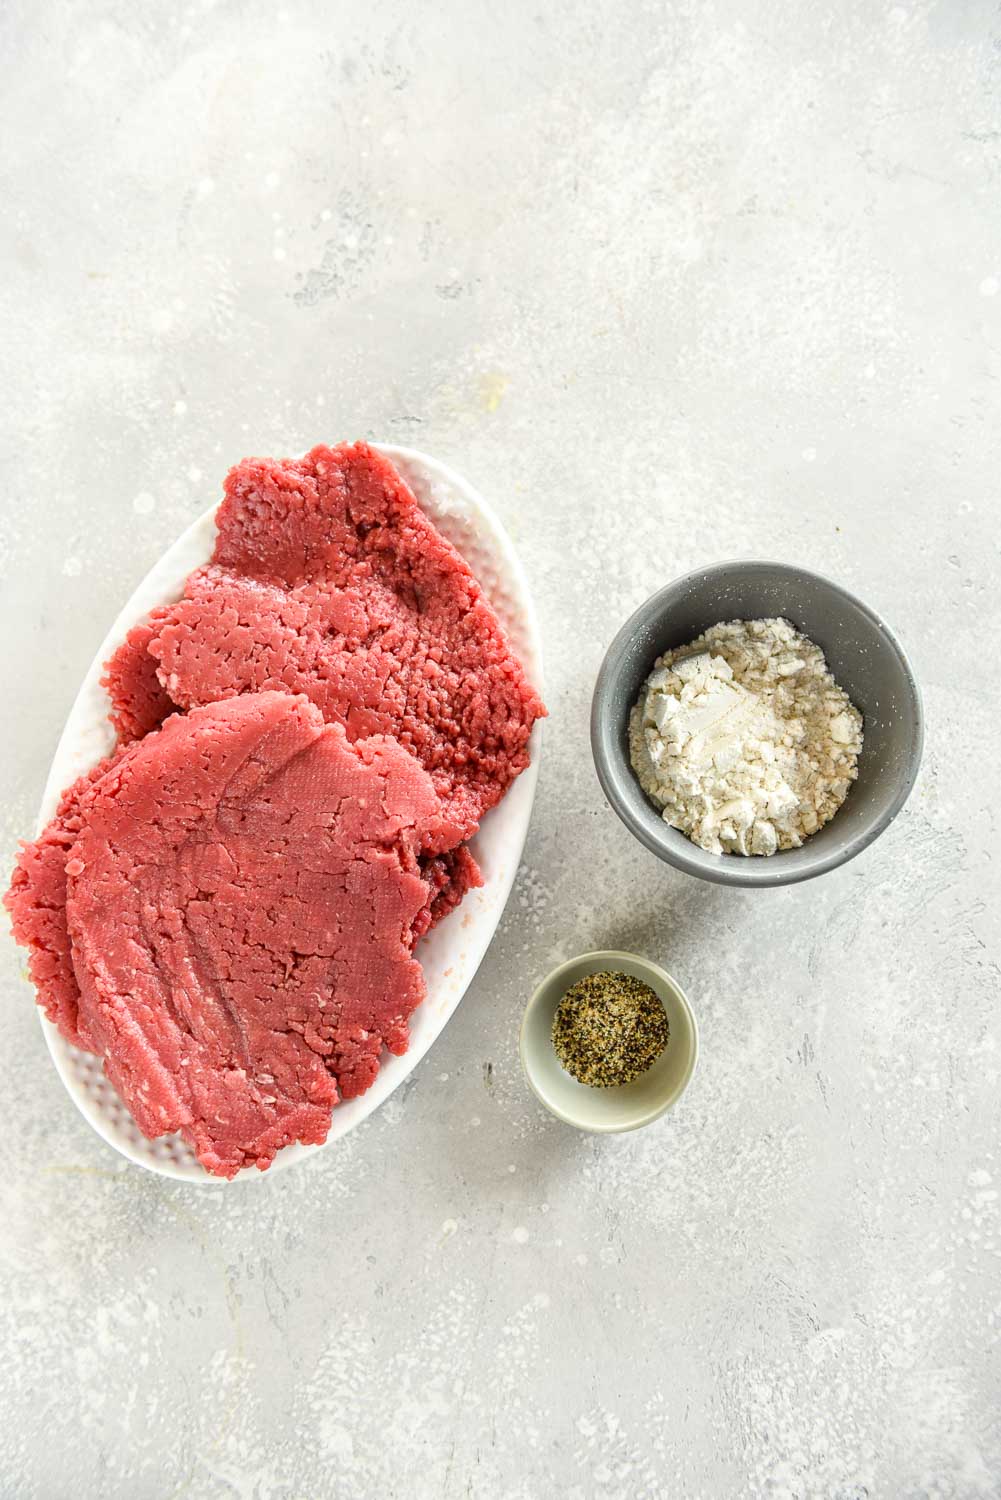 Ground beef, flour, steak seasonings